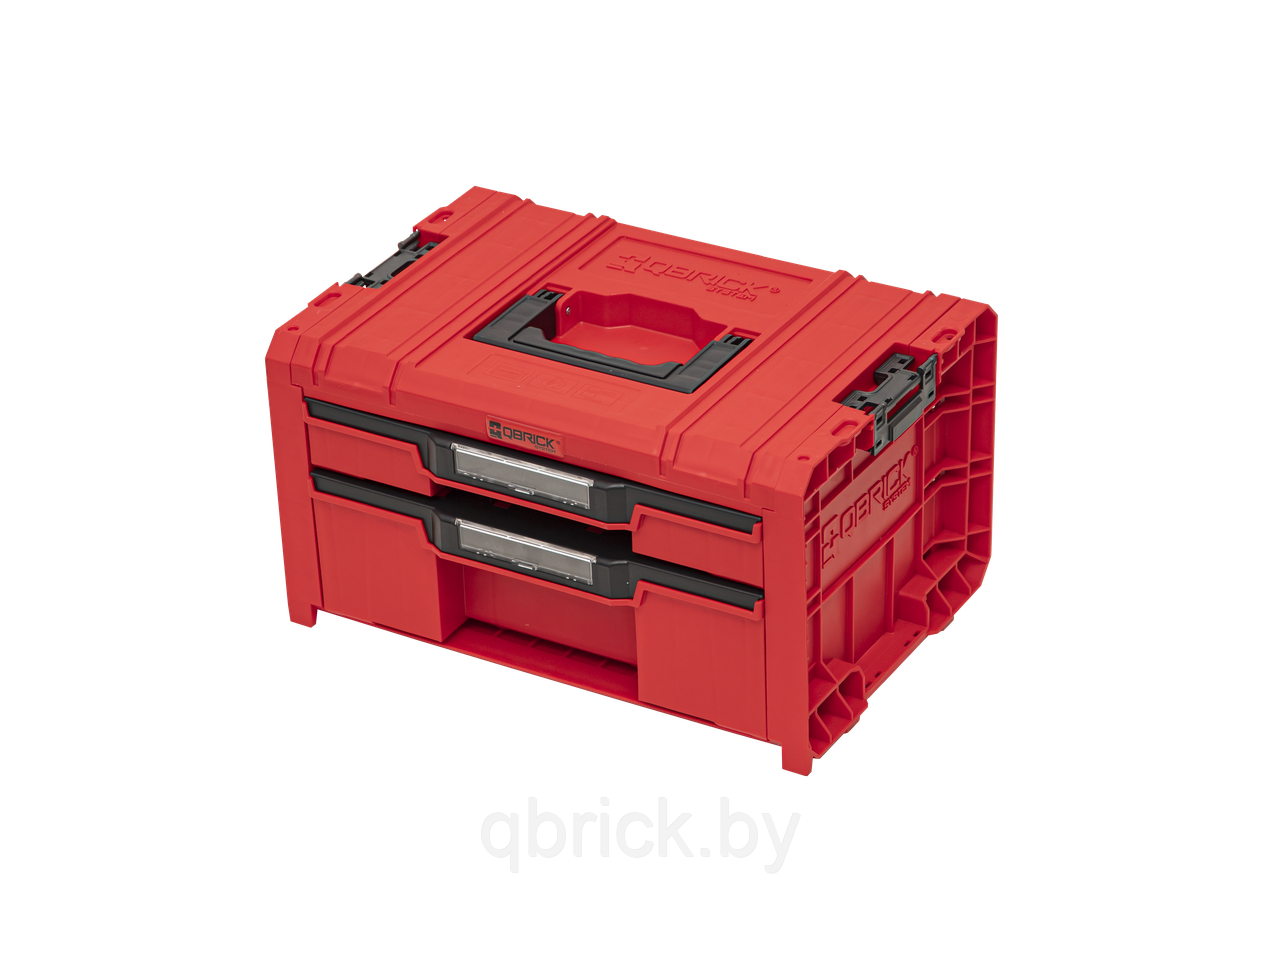 Ящик для инструментов Qbrick System PRO Drawer 2 Toolbox Expert Red Ultra HD, красный